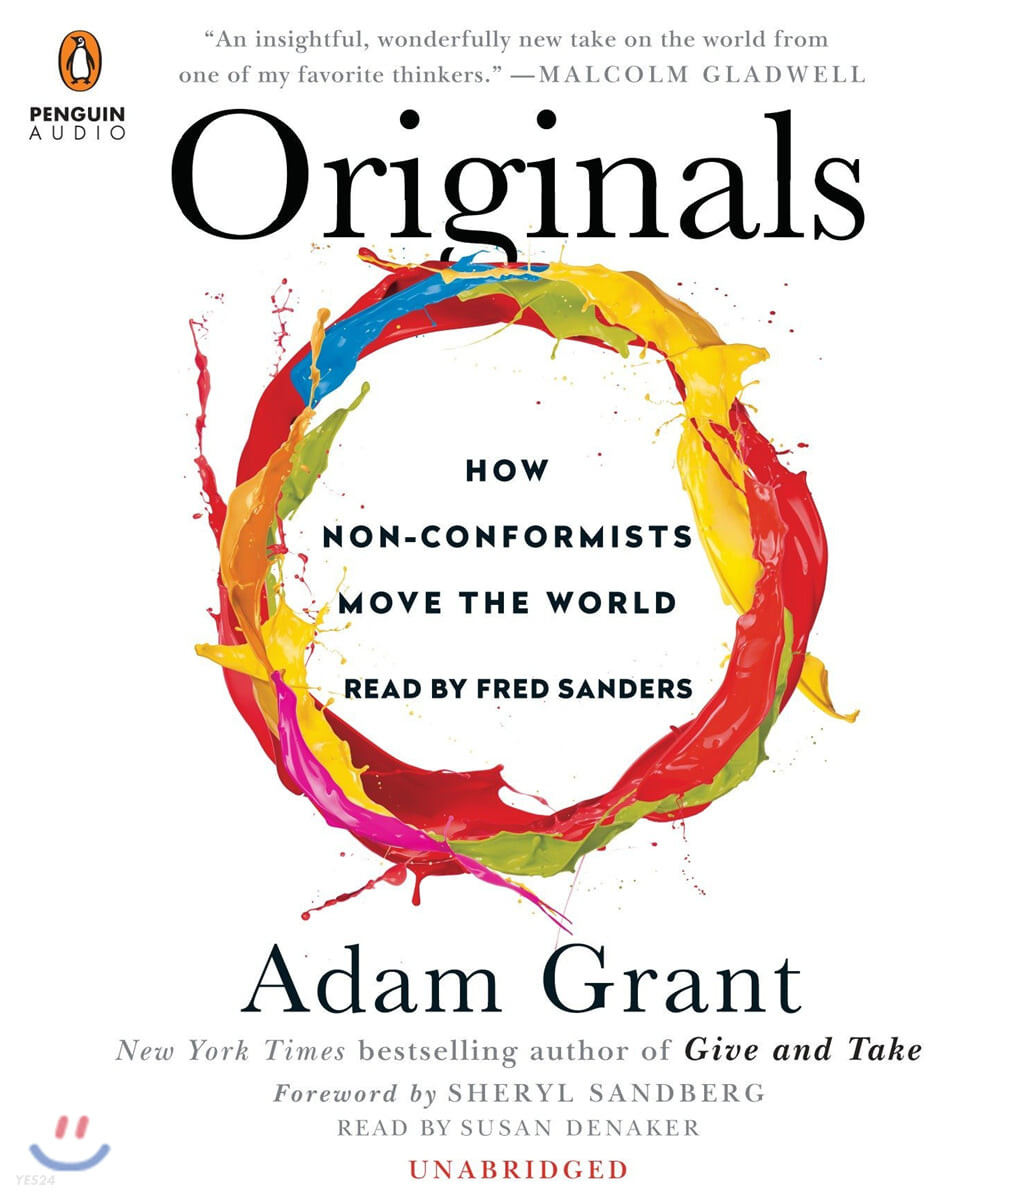 Originals (How Non-Conformists Move the World)